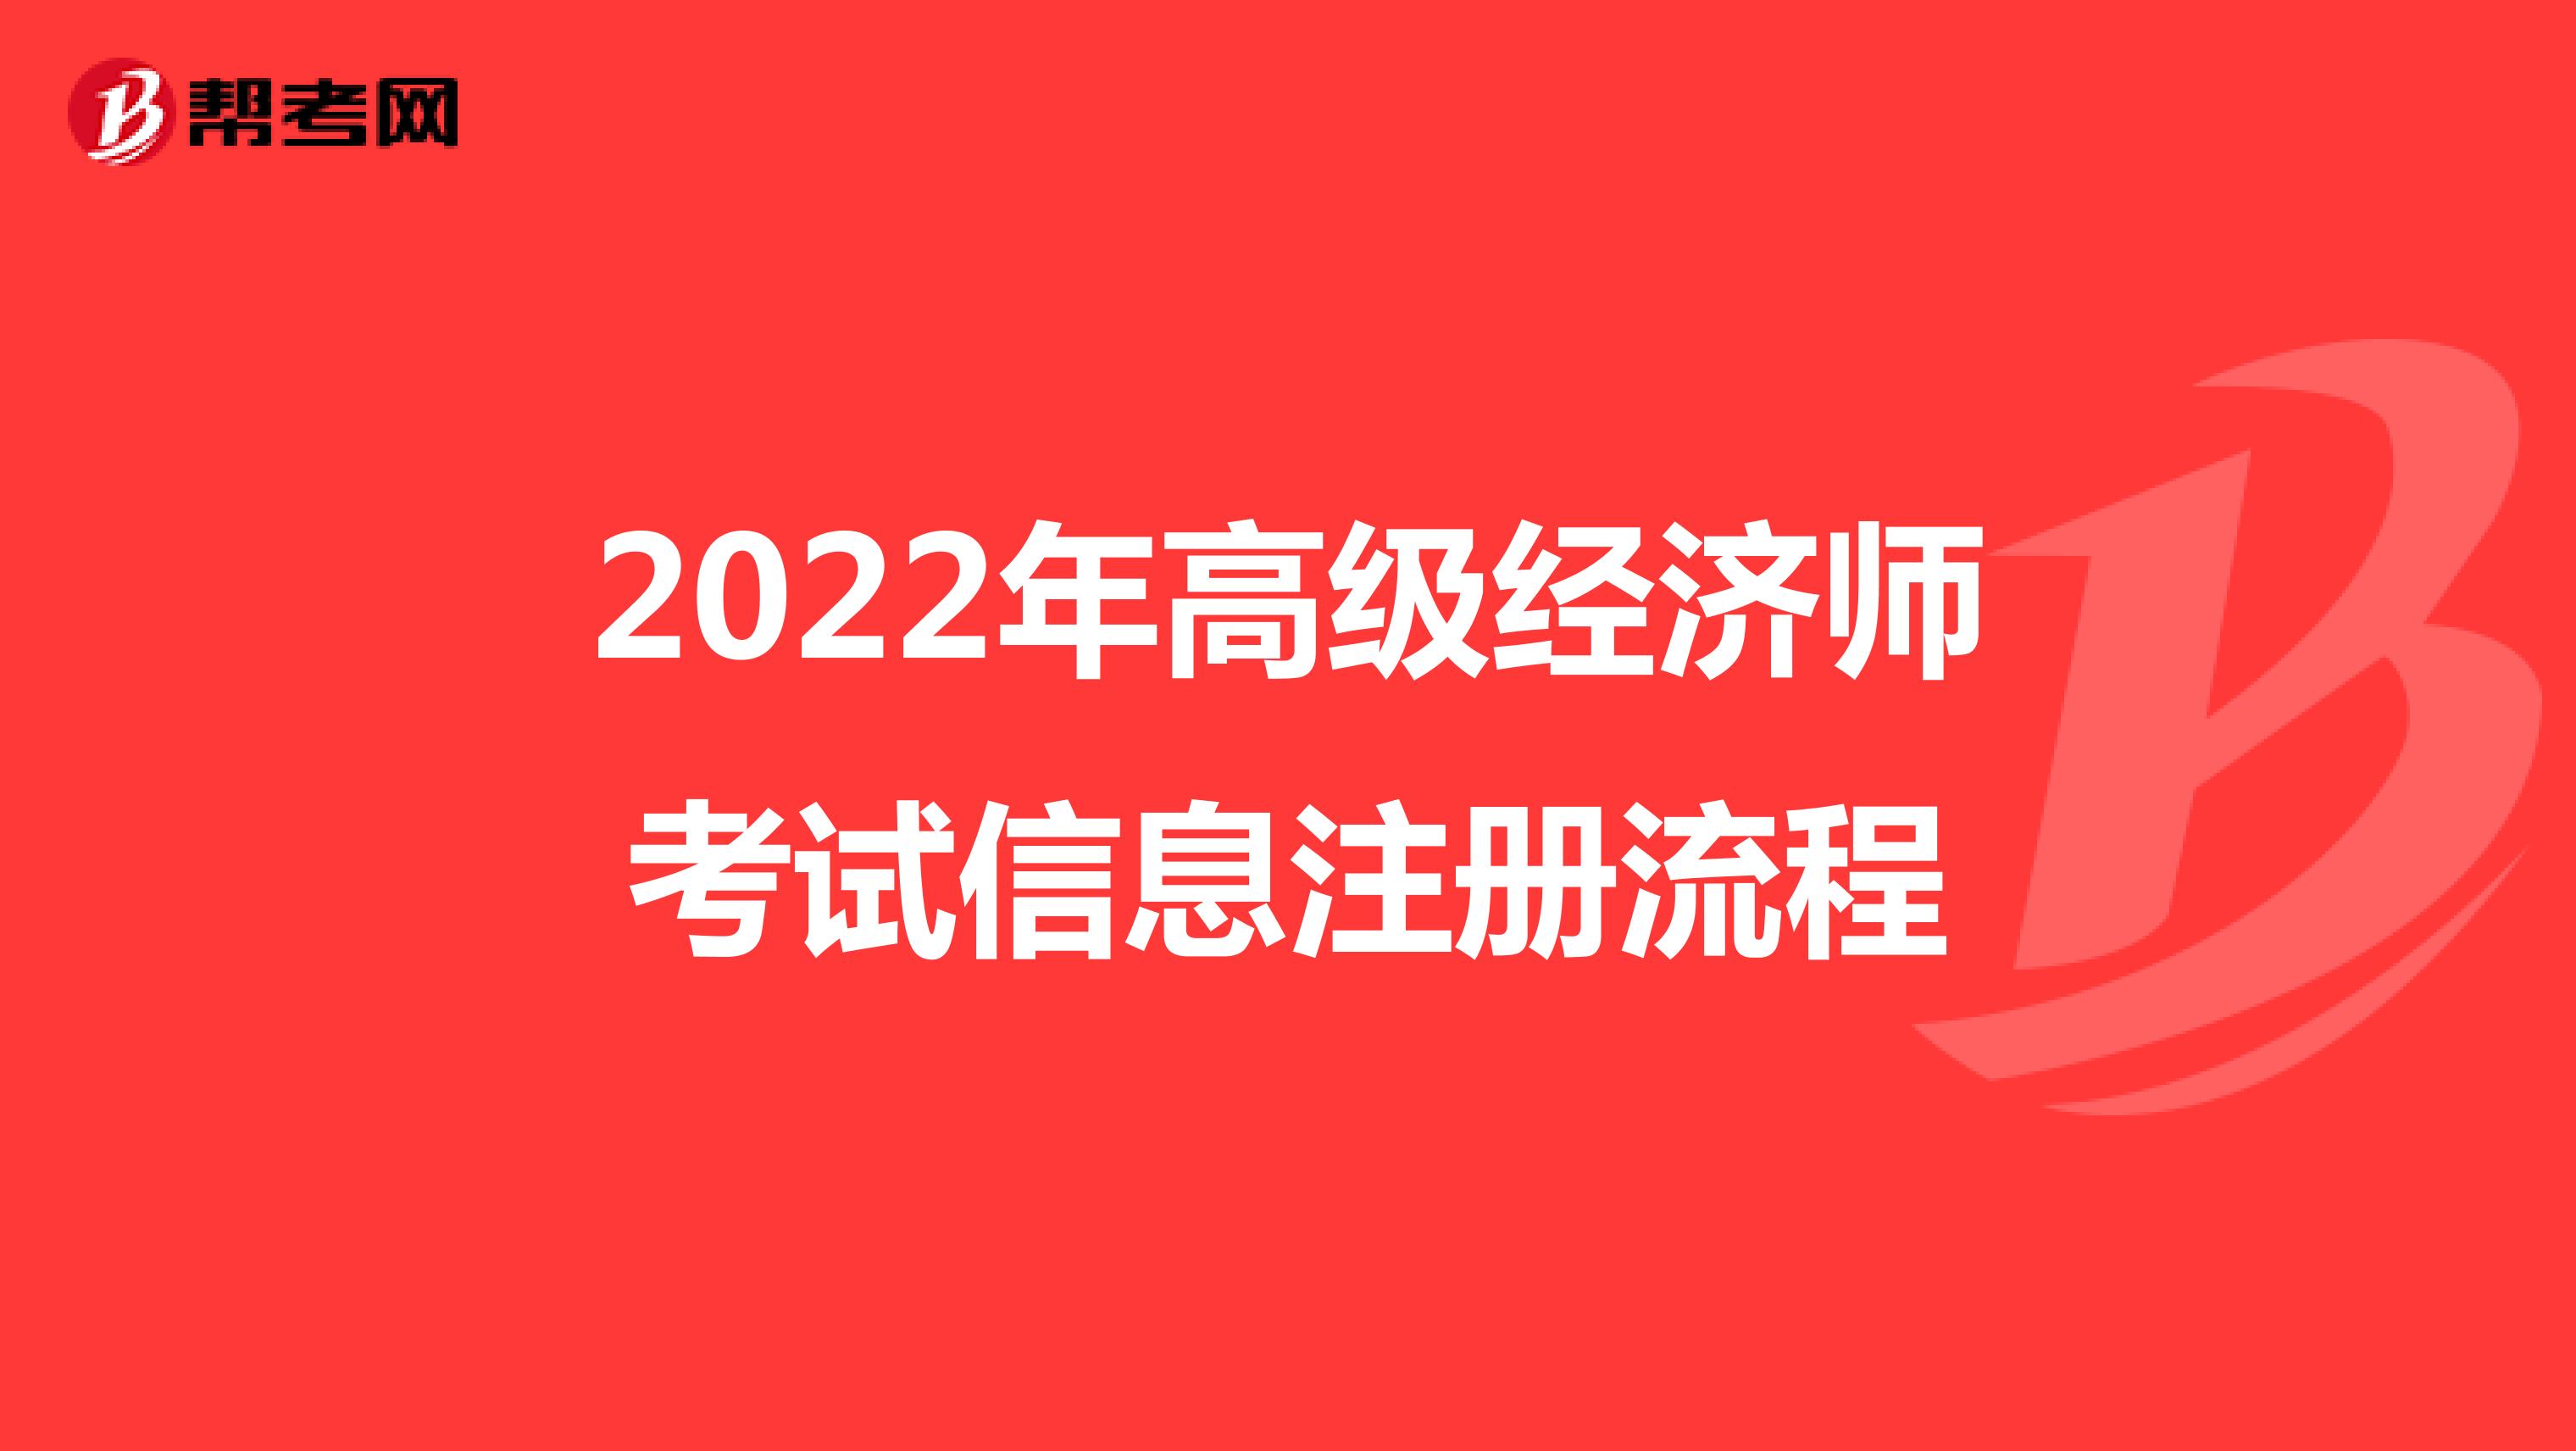 2022年高级经济师考试信息注册流程